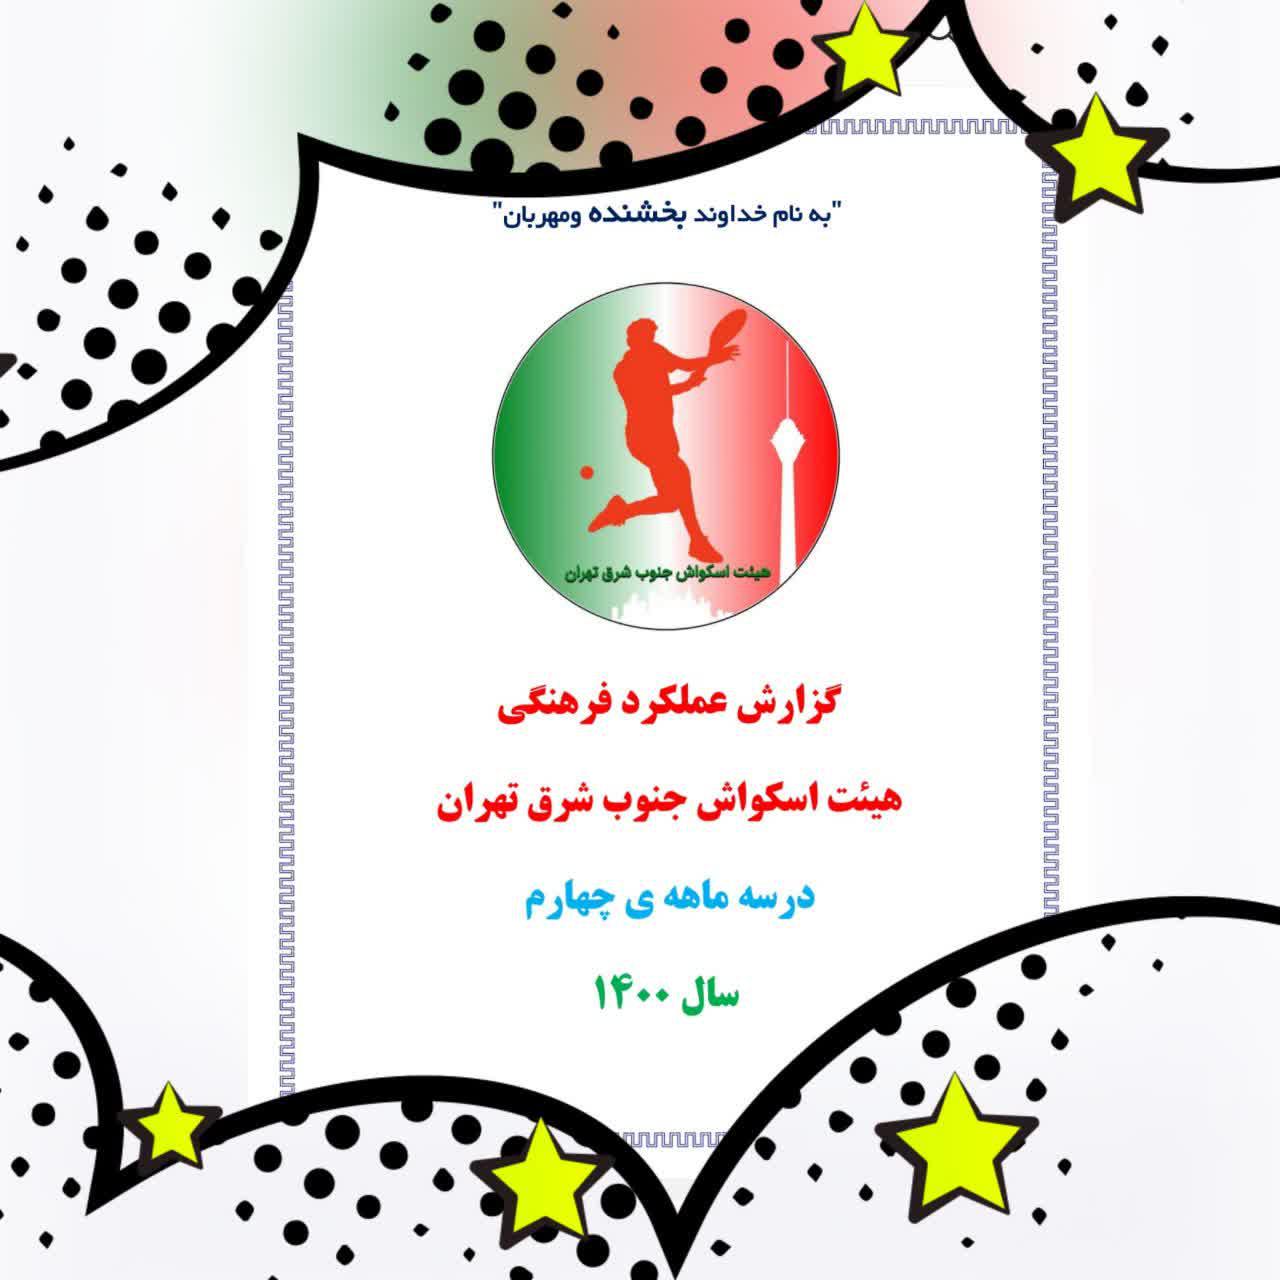 ارسال گزارش عملکرد فرهنگی سه ماهه ی چهارم ۱۴۰۰ اسکواش جنوب شرق به هیئت استان تهران